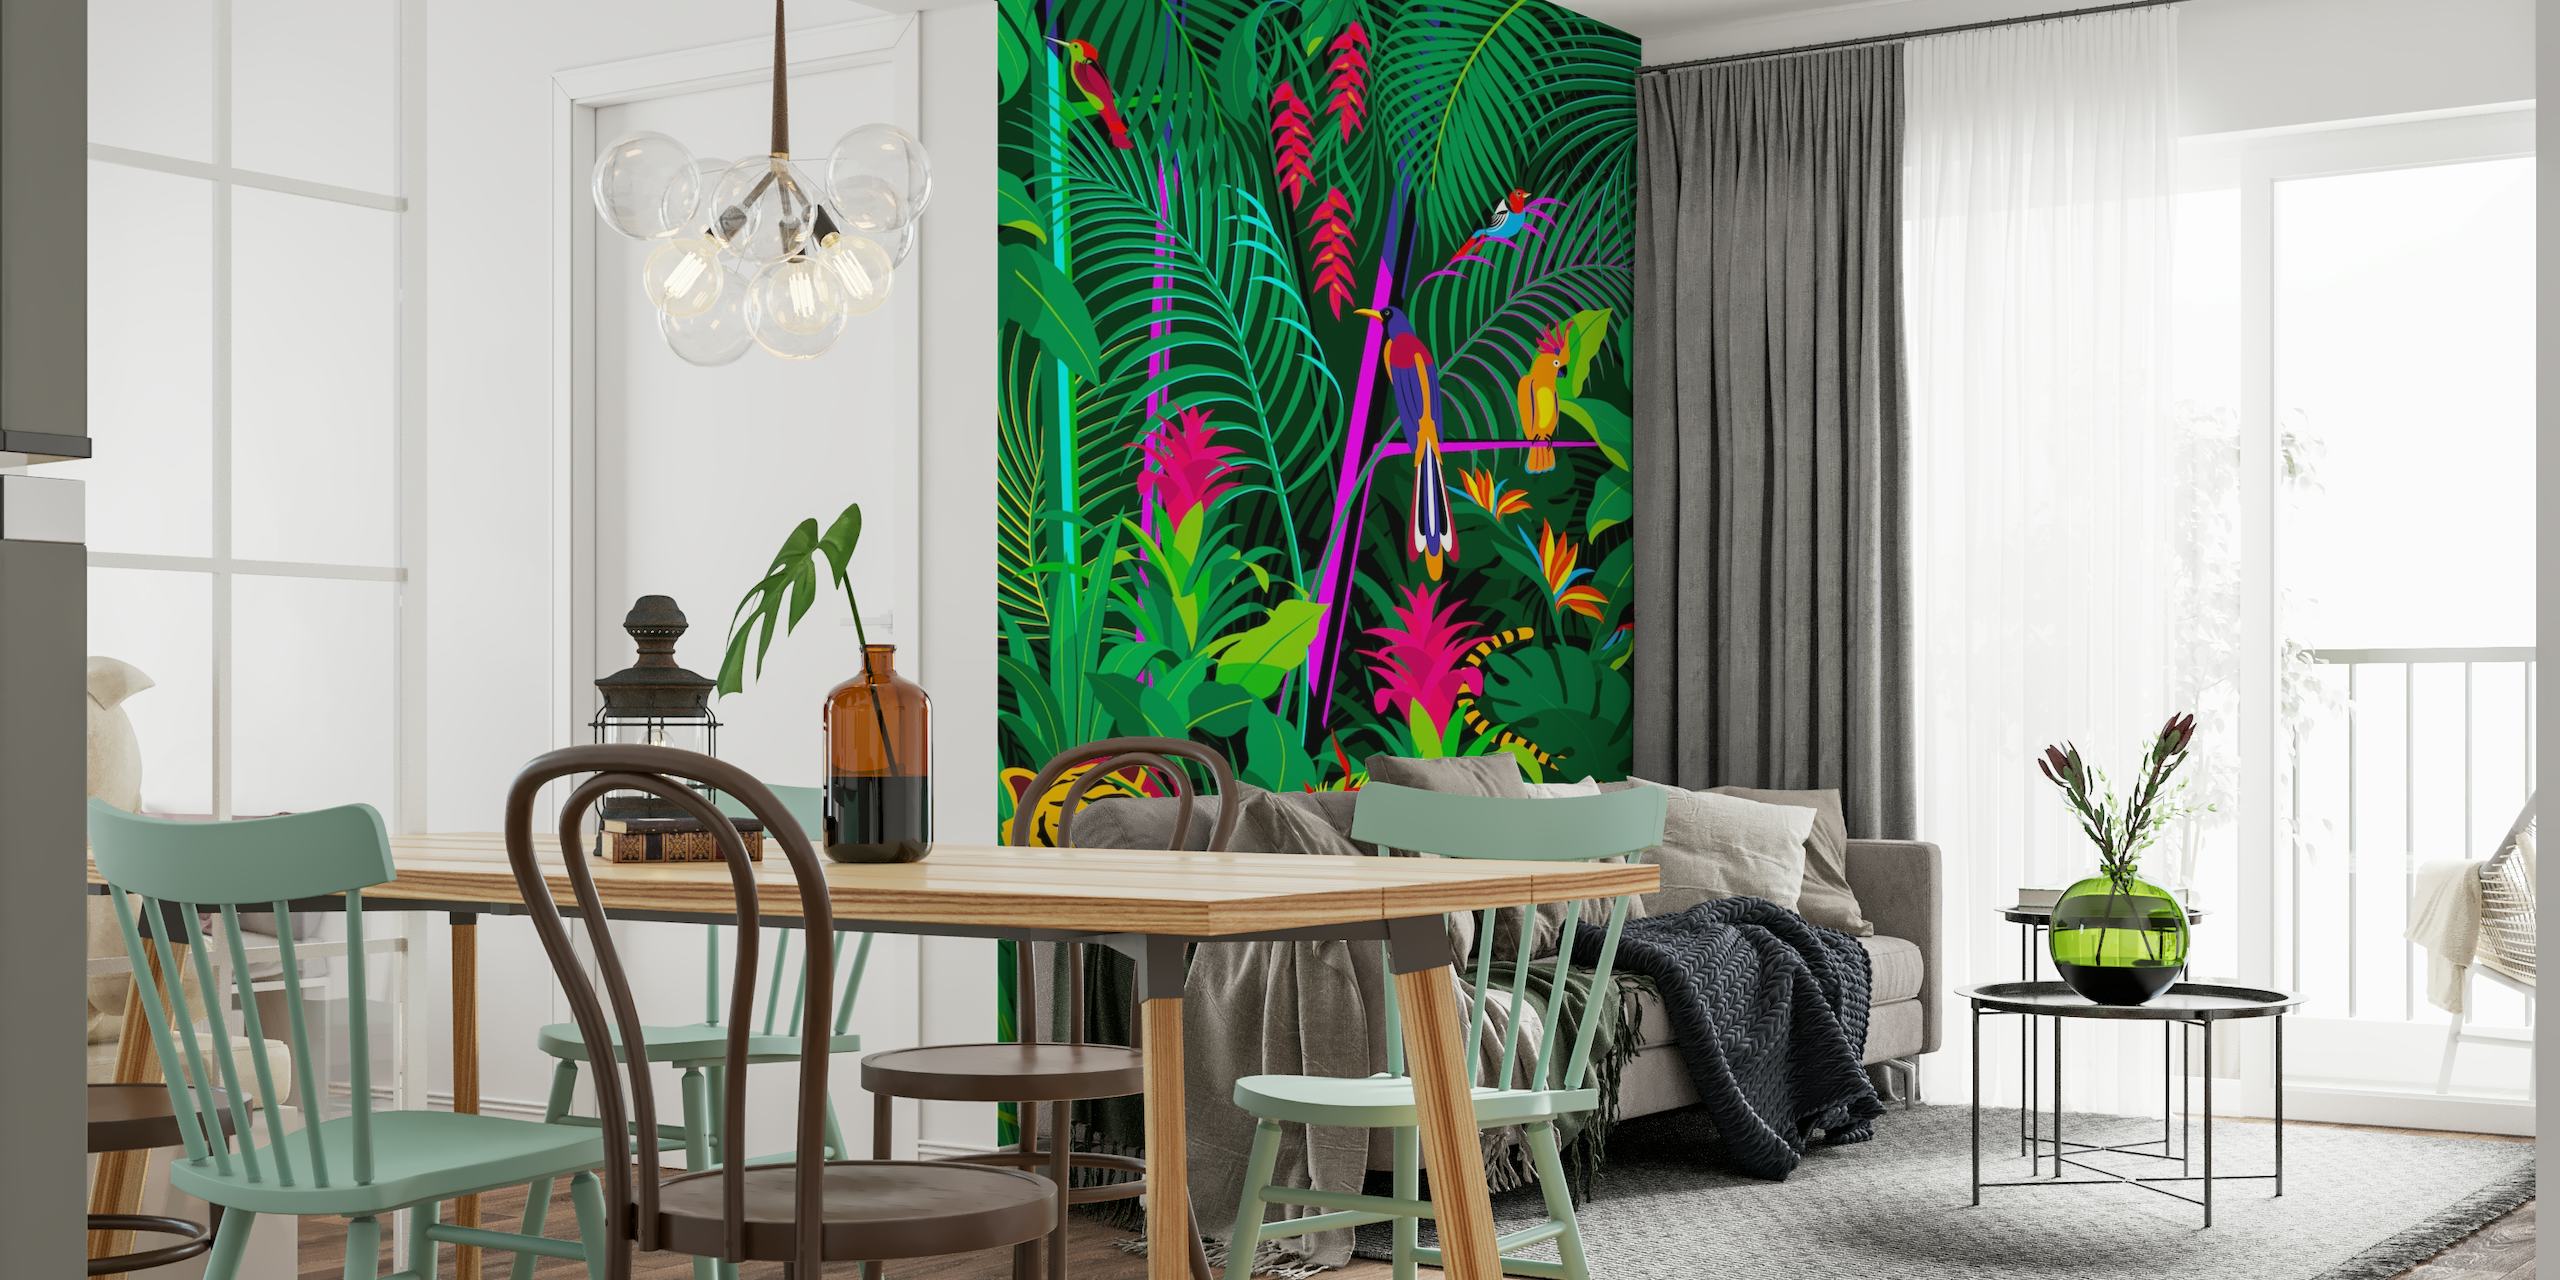 Trooppinen viidakon seinämaalaus, jossa on tiheä vihreä lehti, värikkäitä kukkia ja piilotettu tiikeri